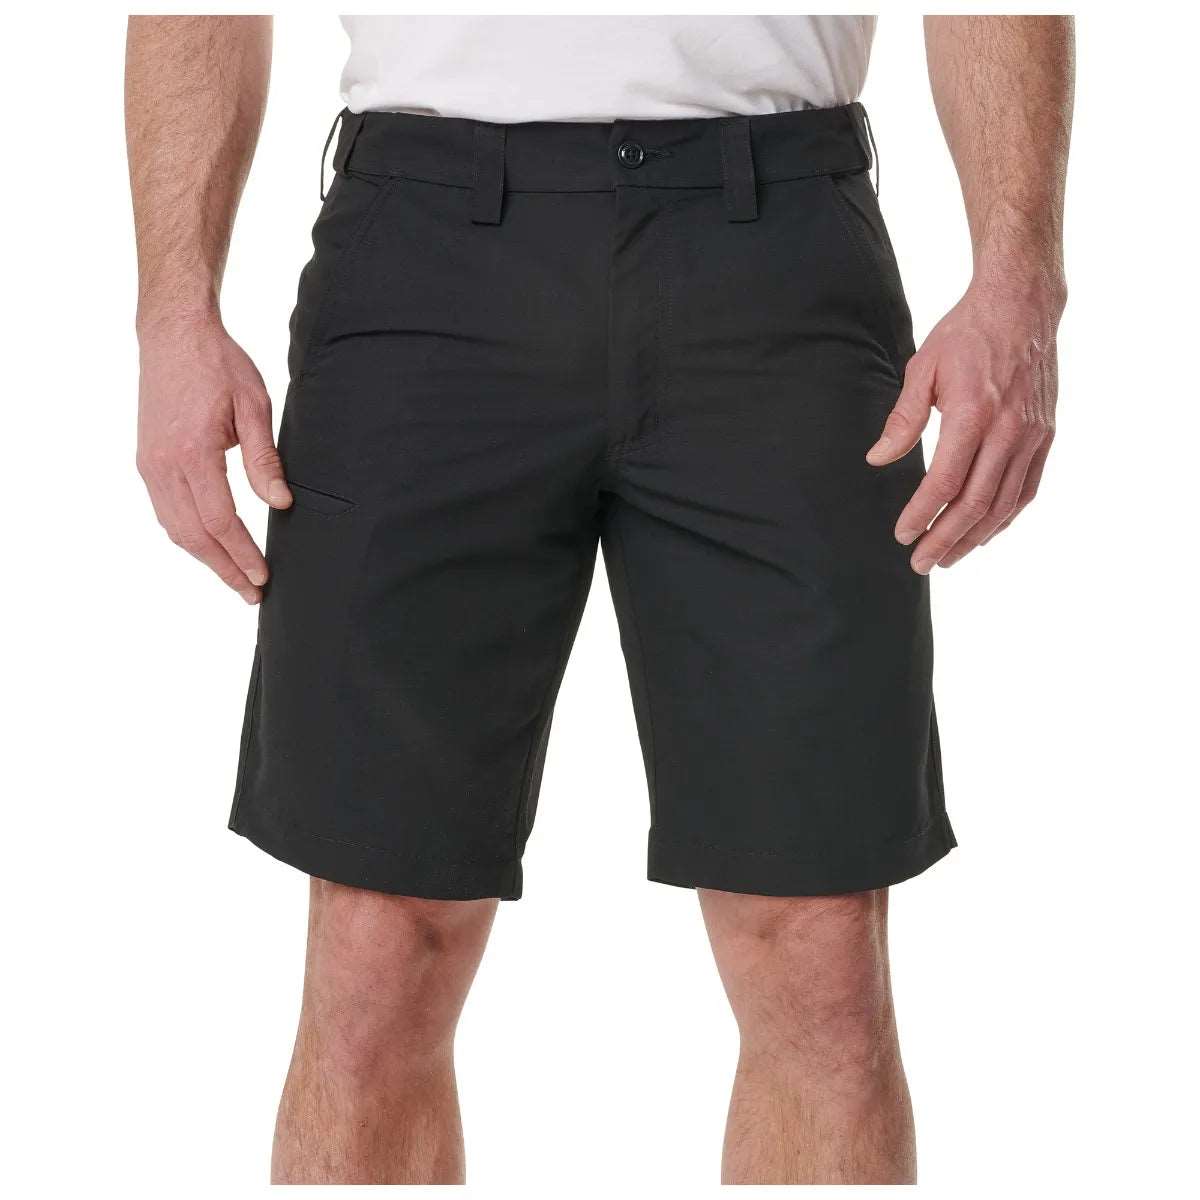 Shorts - 5.11 Tactical Fast-Tac Urban 11" Shorts